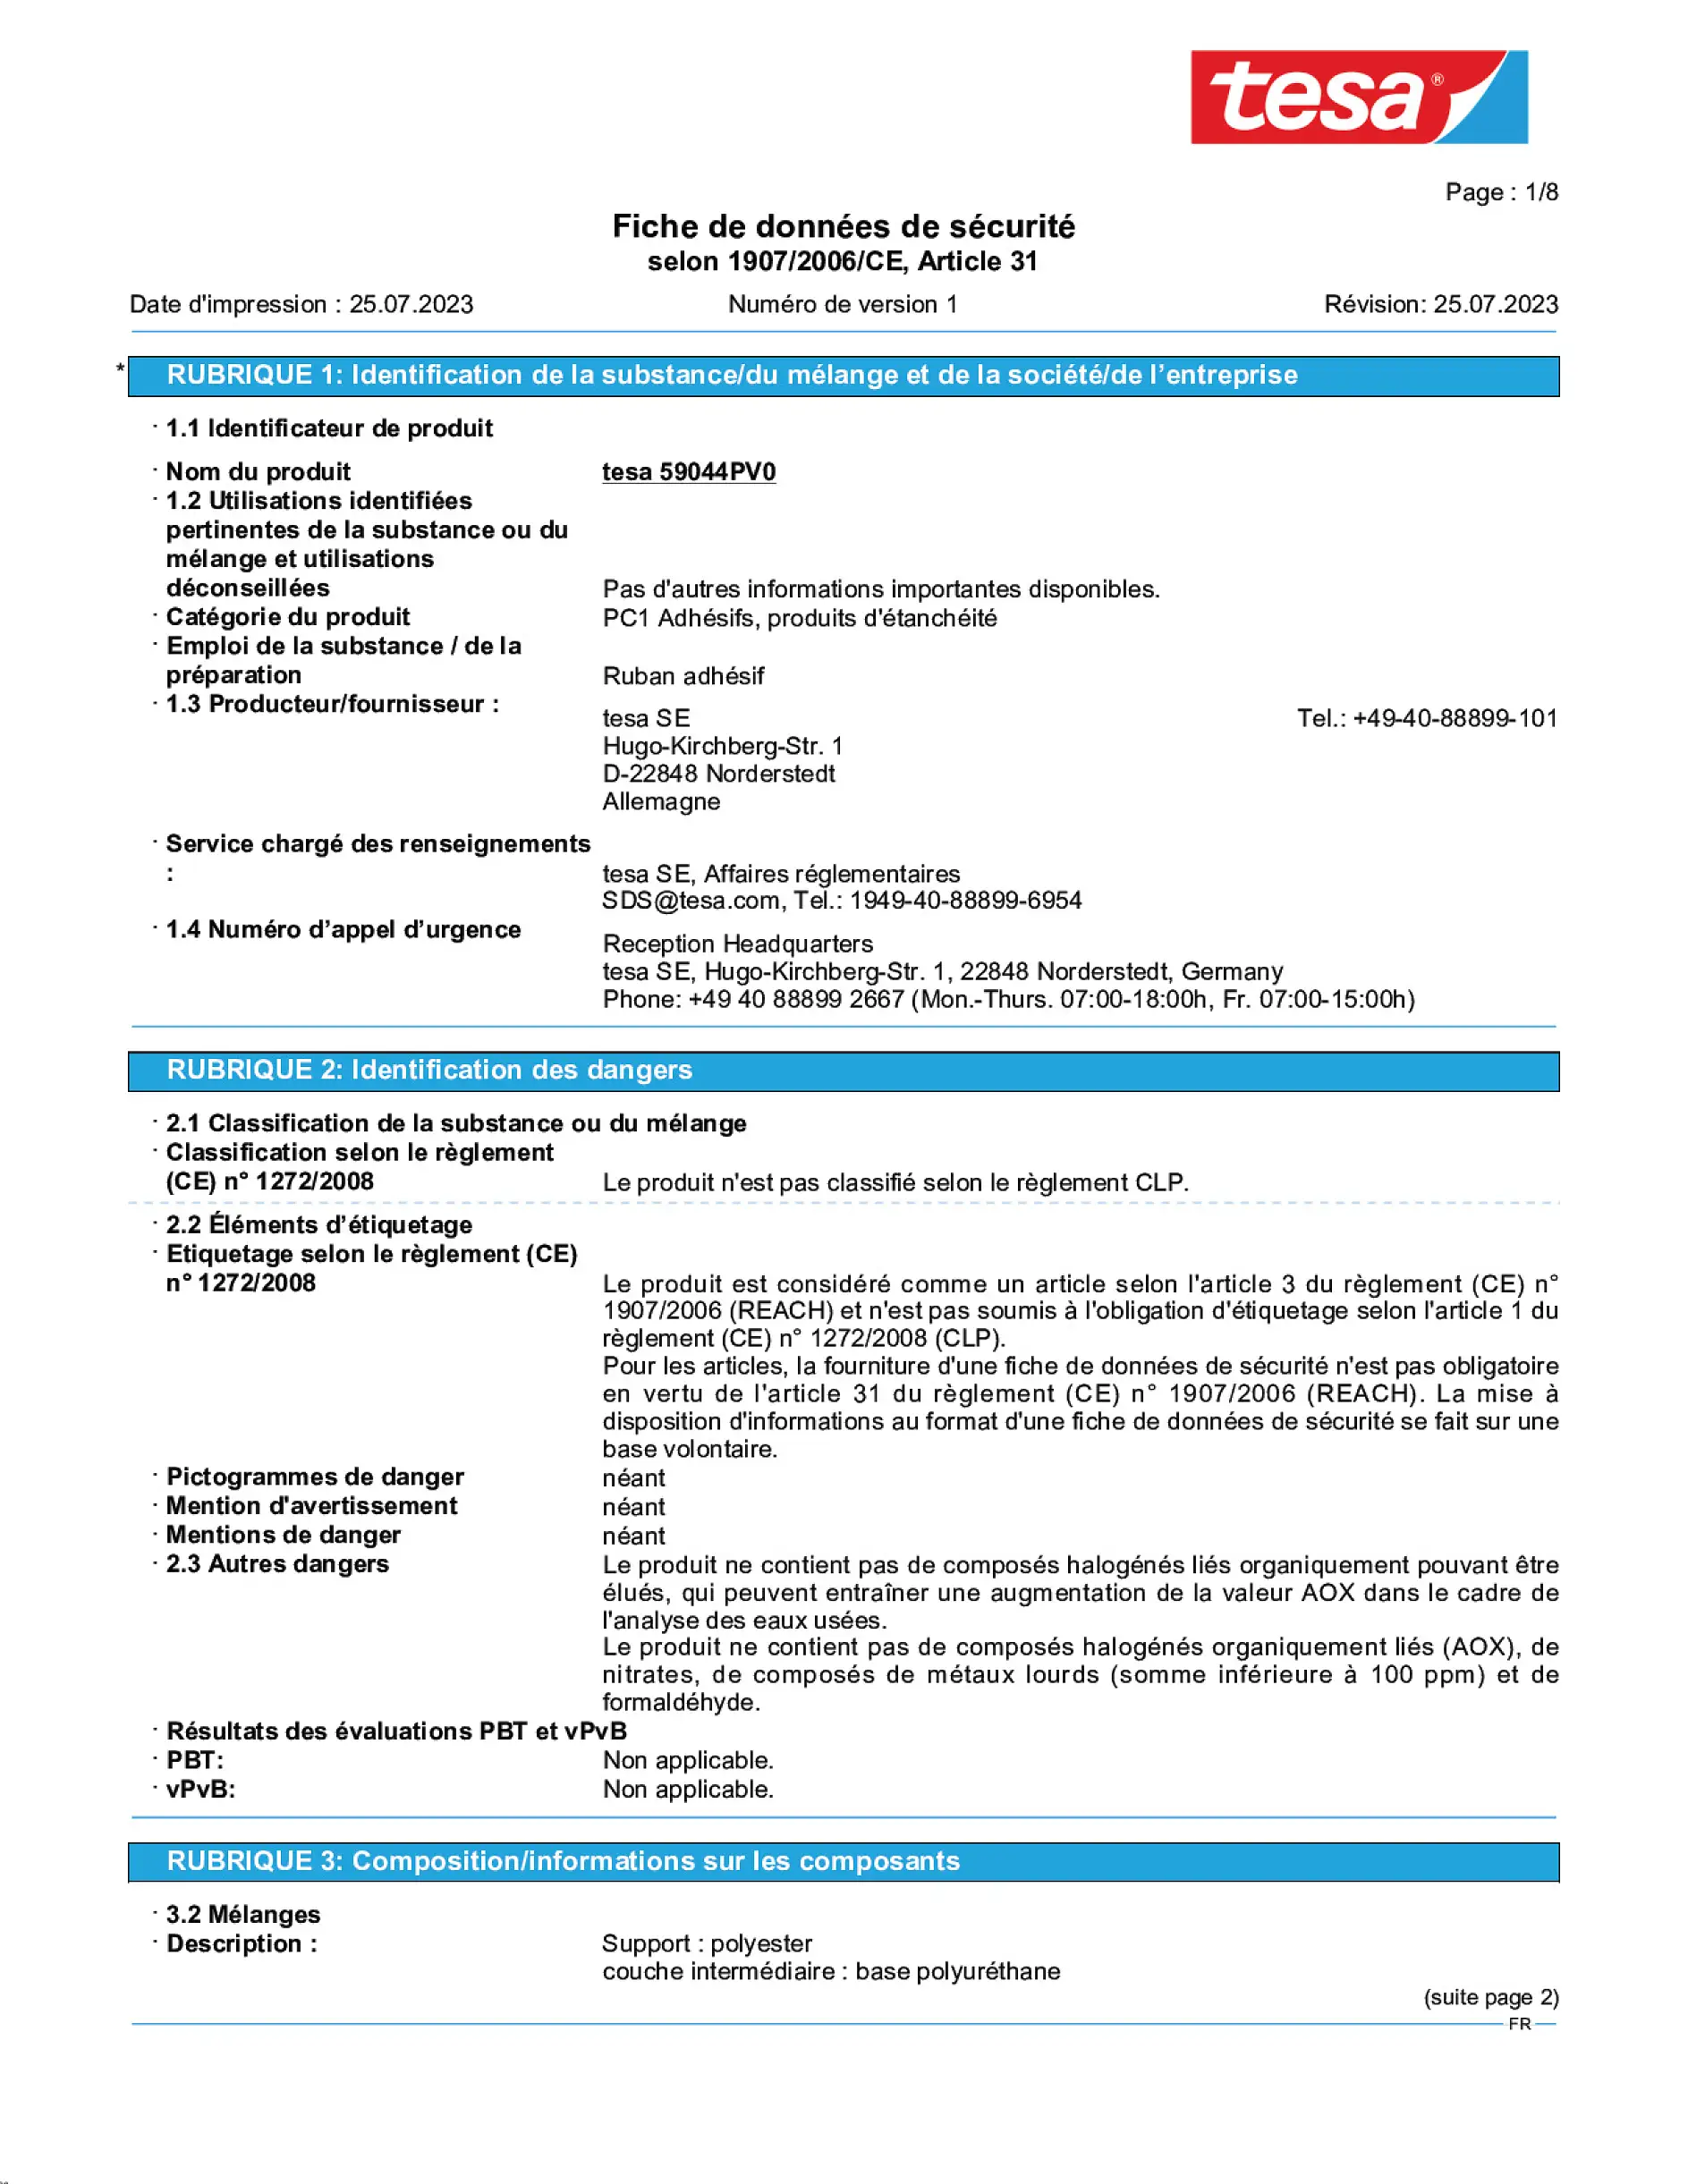 Safety data sheet_tesafilm® 59036_fr-FR_v1